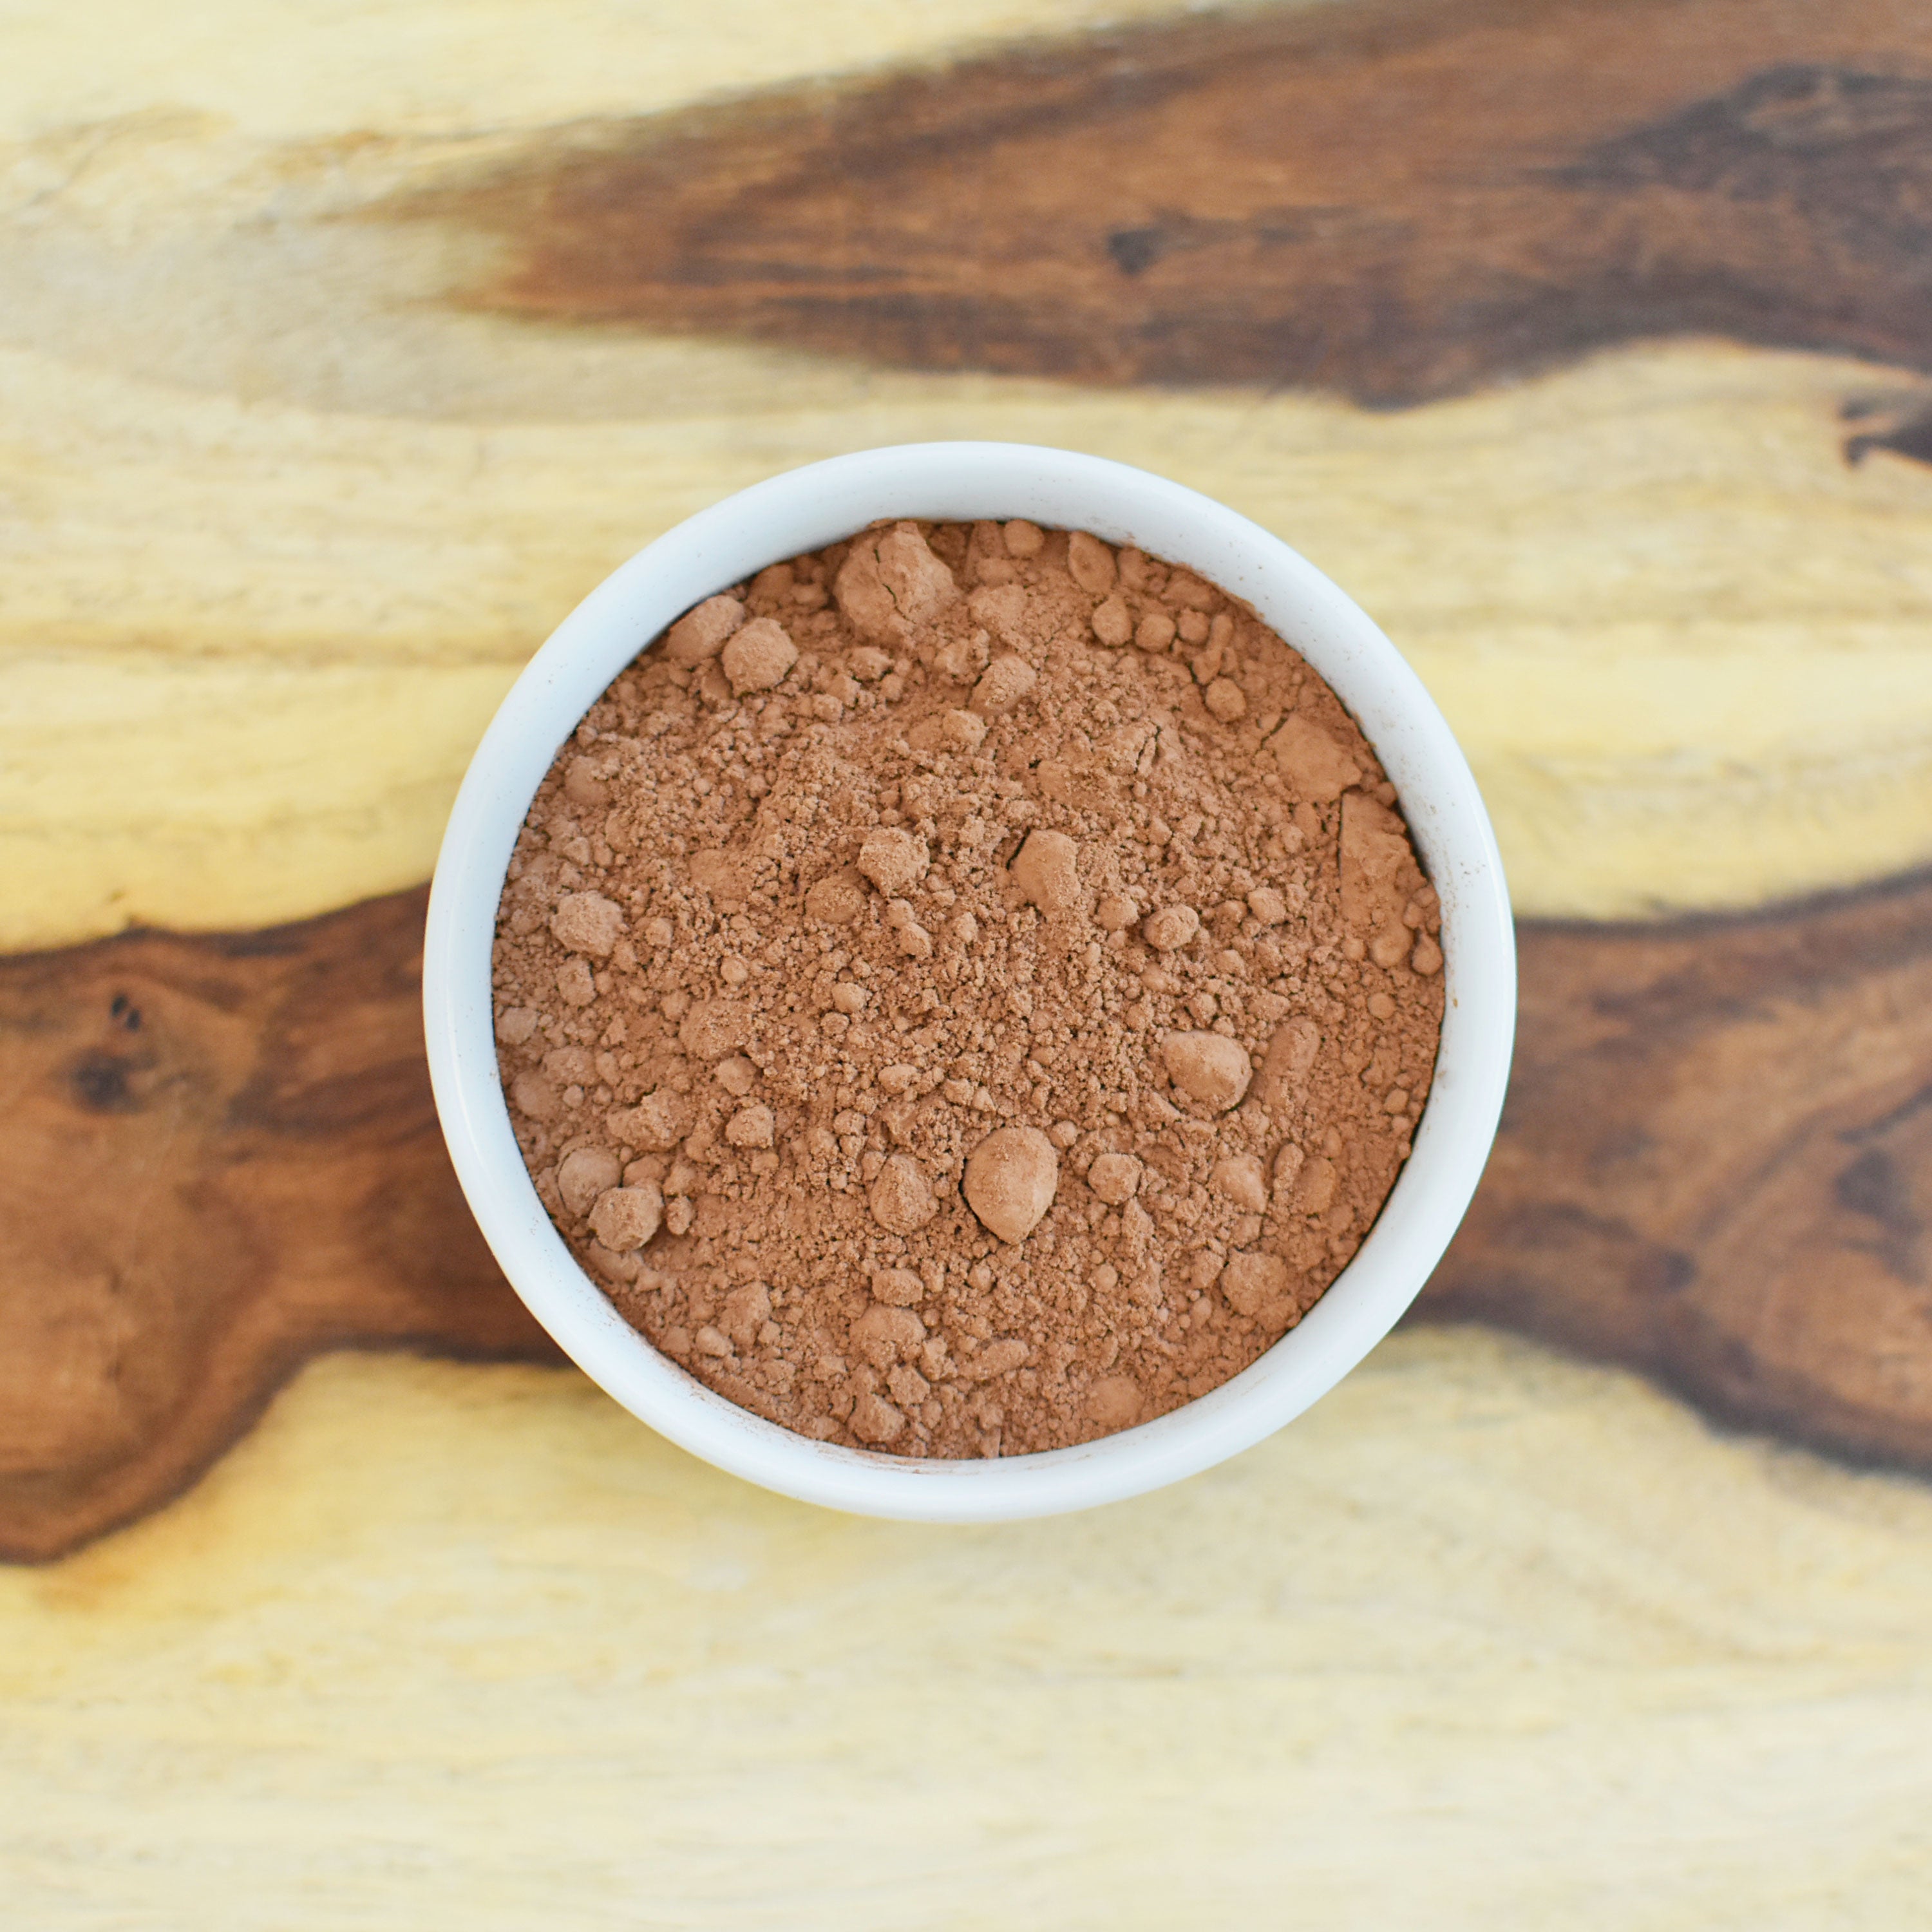 Organic Culinary Grade Cocoa Powder: Dutch Processed Baking Cocoa - Gluten Free & Non-GMO